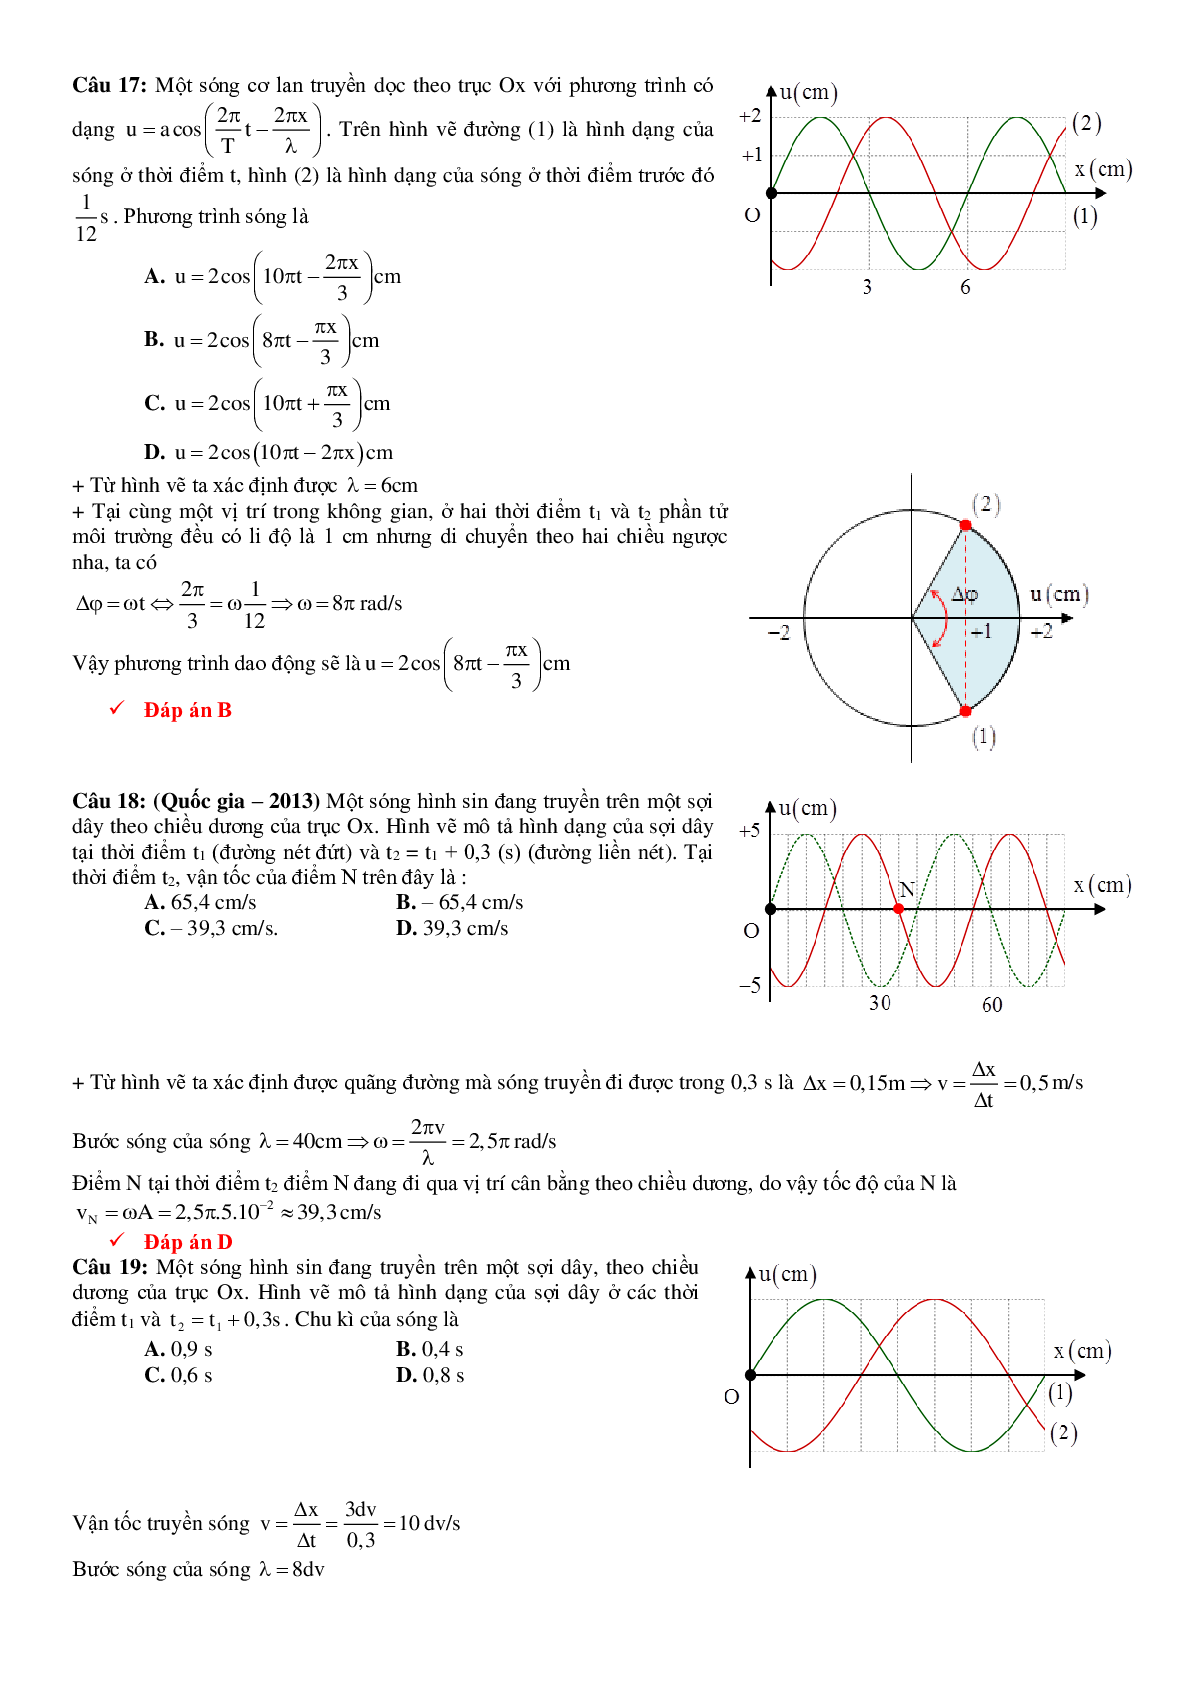 Lý thuyết, bài tập Đồ thị sóng cơ có đáp án (trang 8)